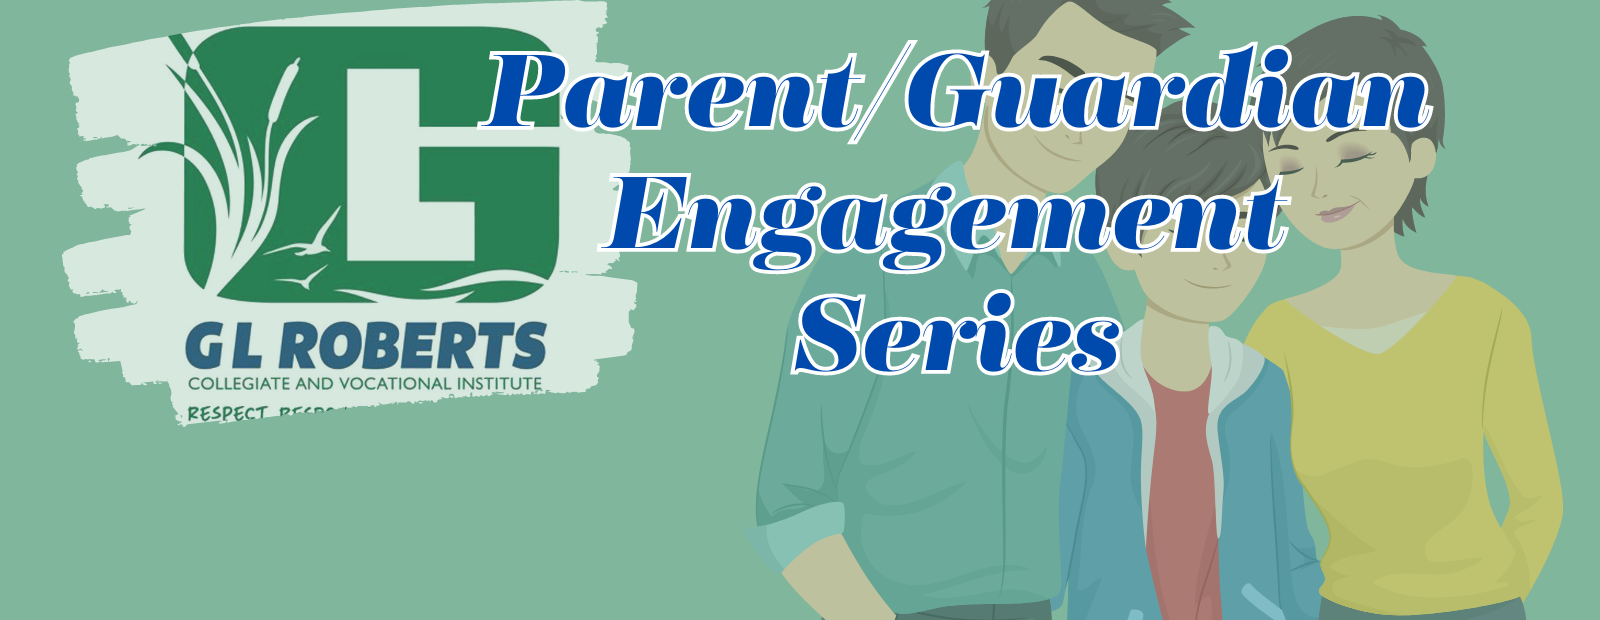 Parent/Guardian Engagement Series